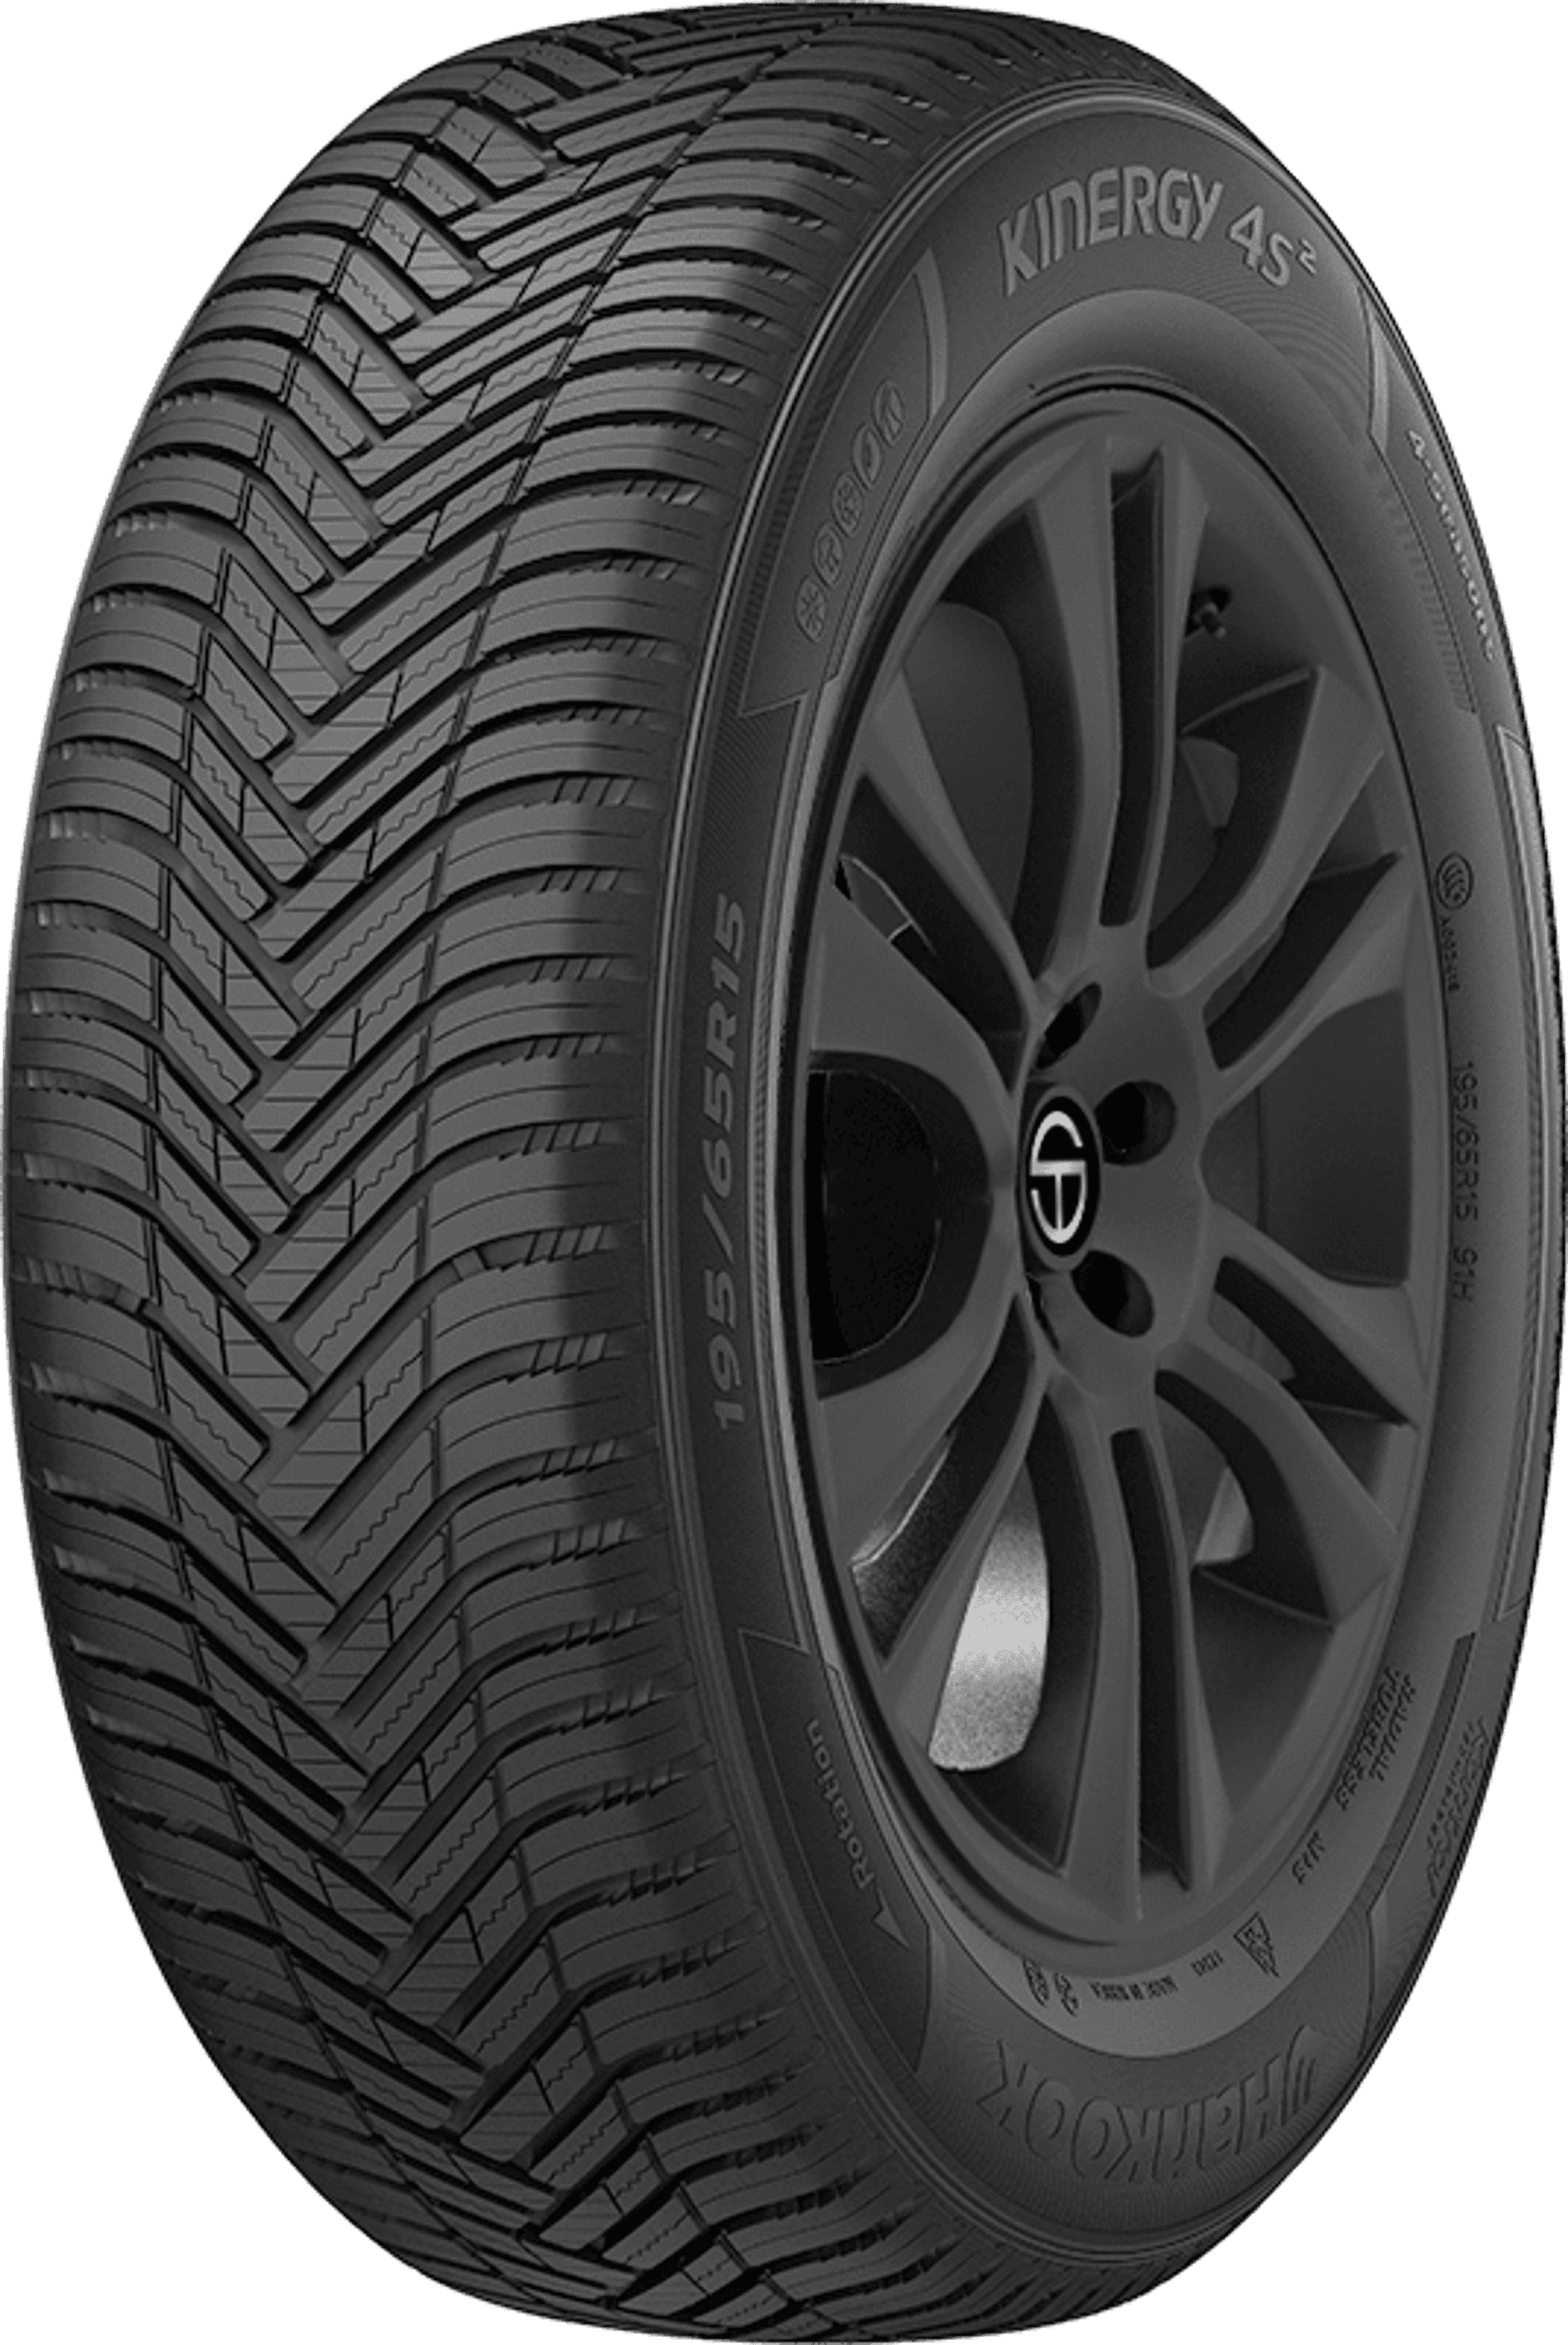 Buy Hankook Kinergy 4S2 (H750) Tires Online | SimpleTire